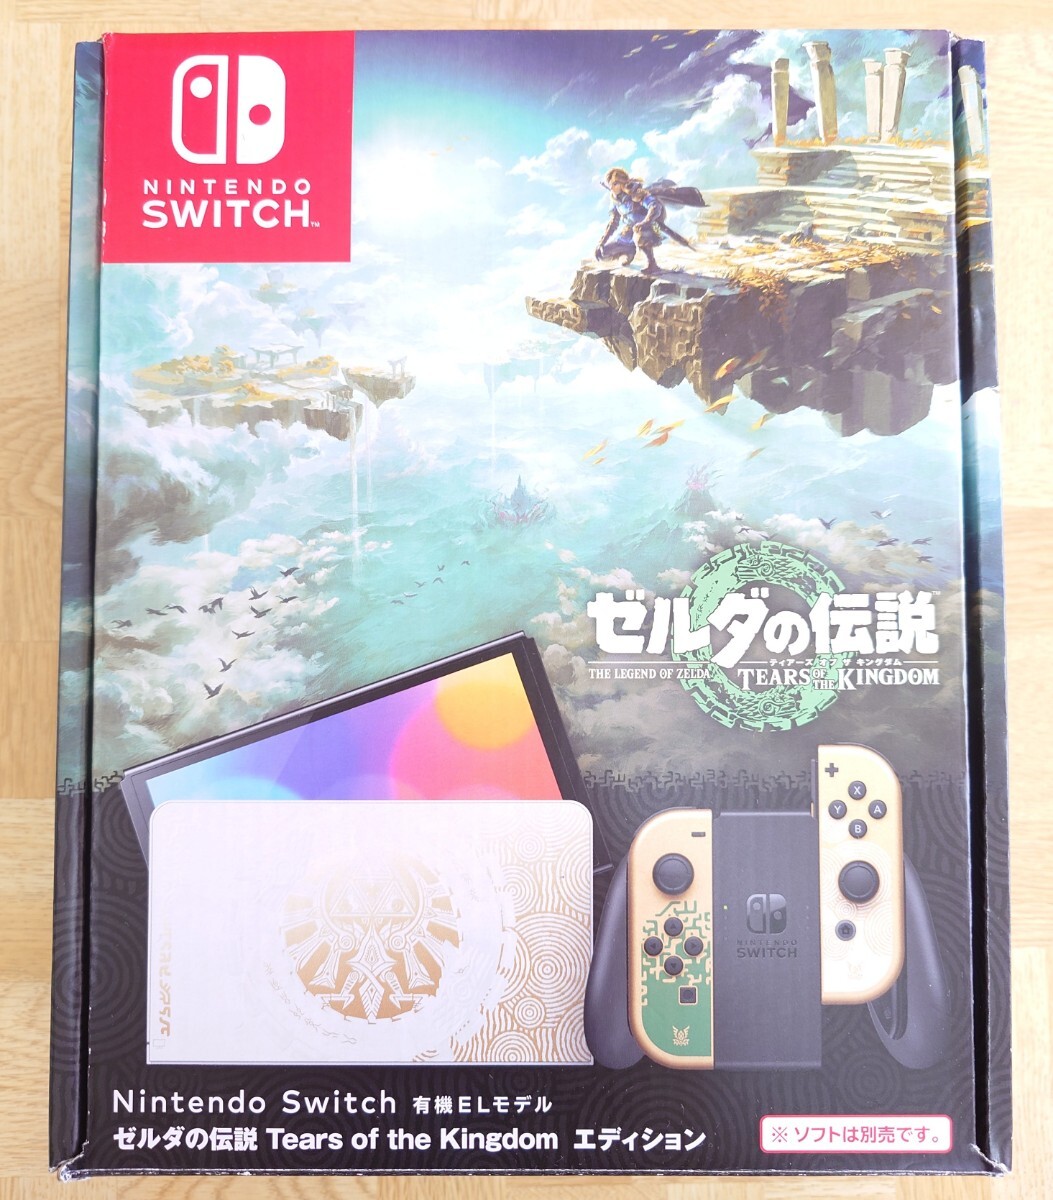 Nintendo Switch ニンテンドー スイッチ 有機ELモデル ゼルダの伝説 Tears of the Kingdom エディション 中古品_画像1